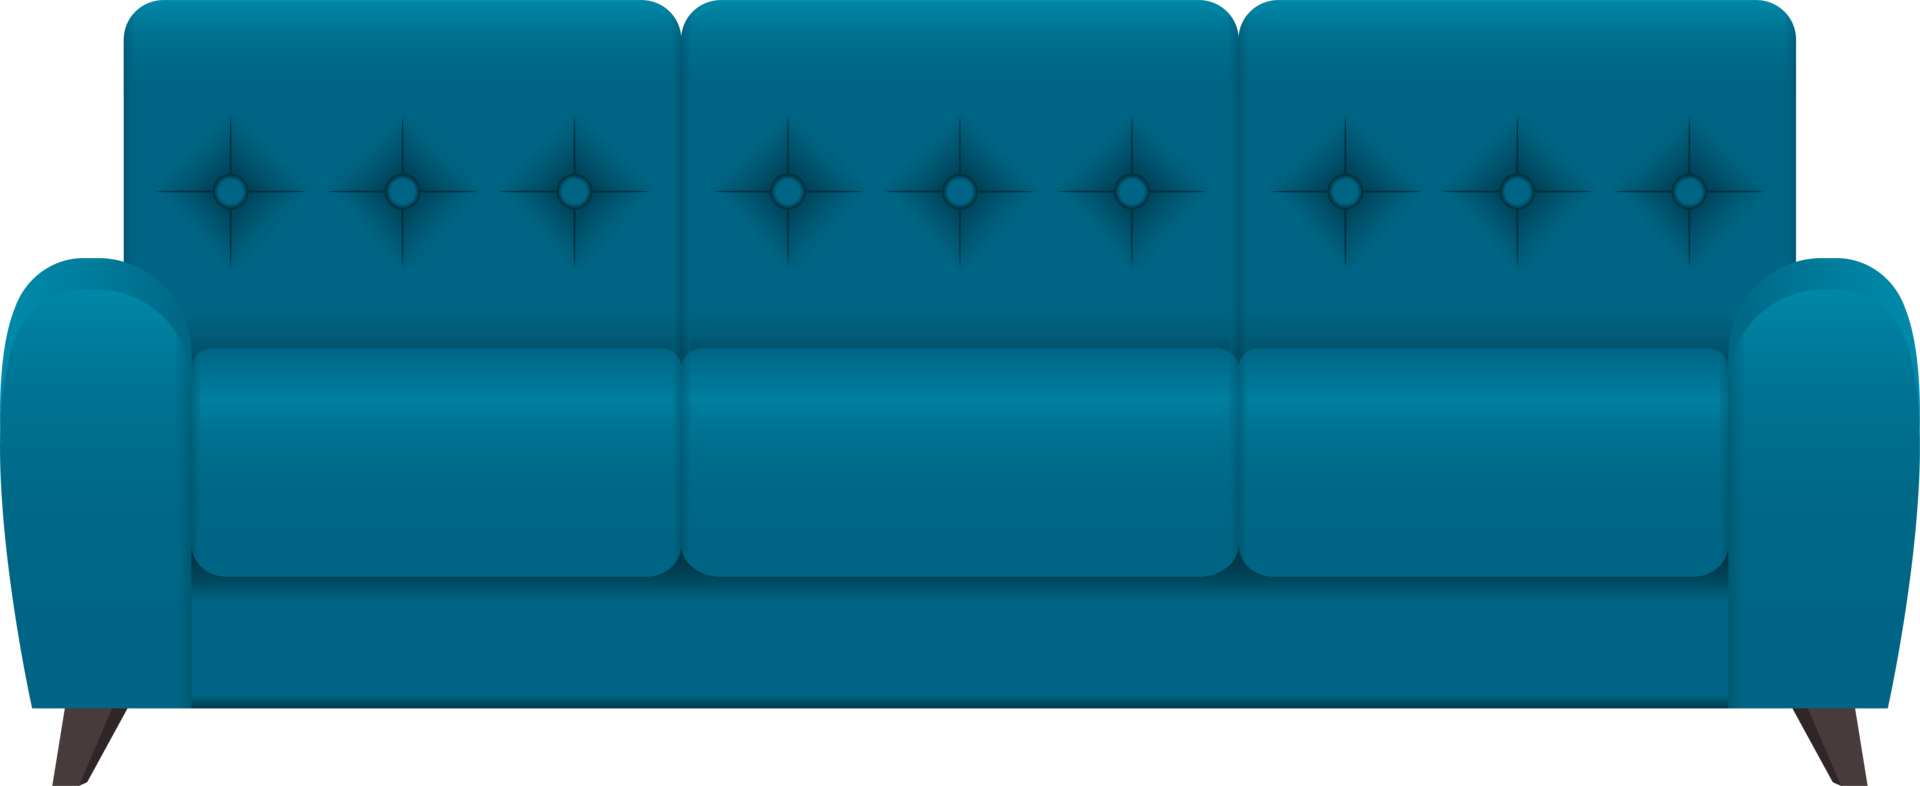 illustrazione di progettazione clipart divano moderno png